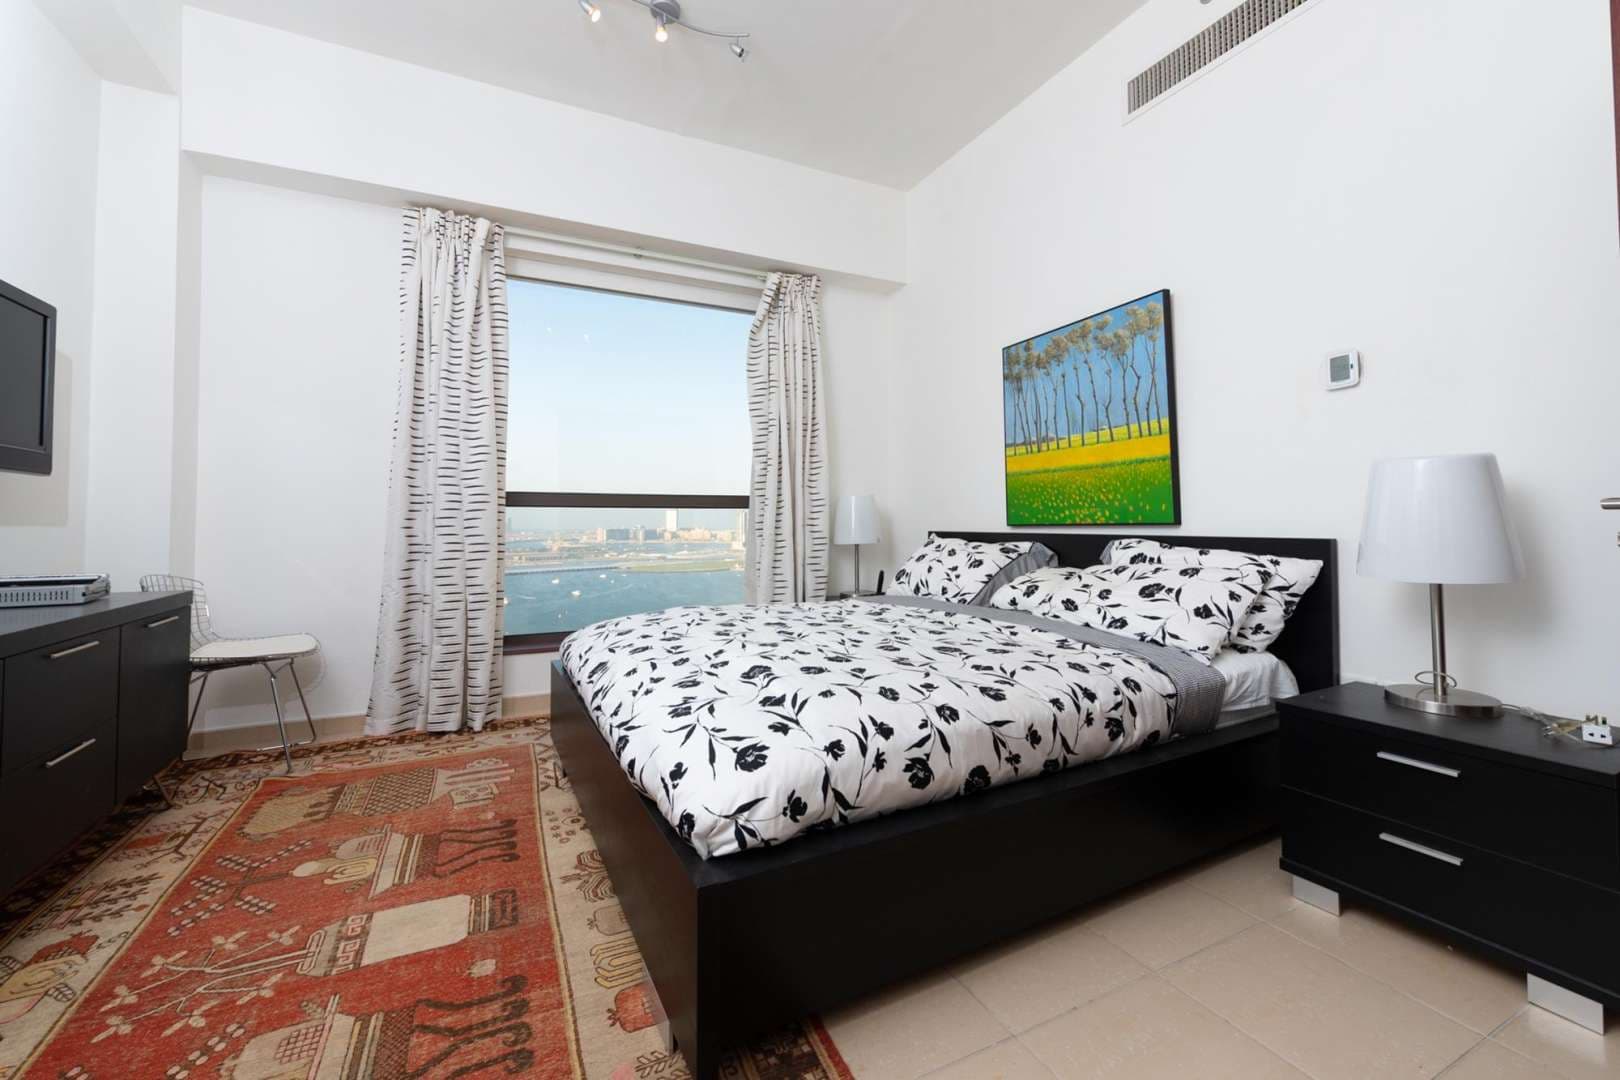 3 Bedroom Apartment For Rent Rimal 5 Lp05344 1a45da53ea46c800.jpg